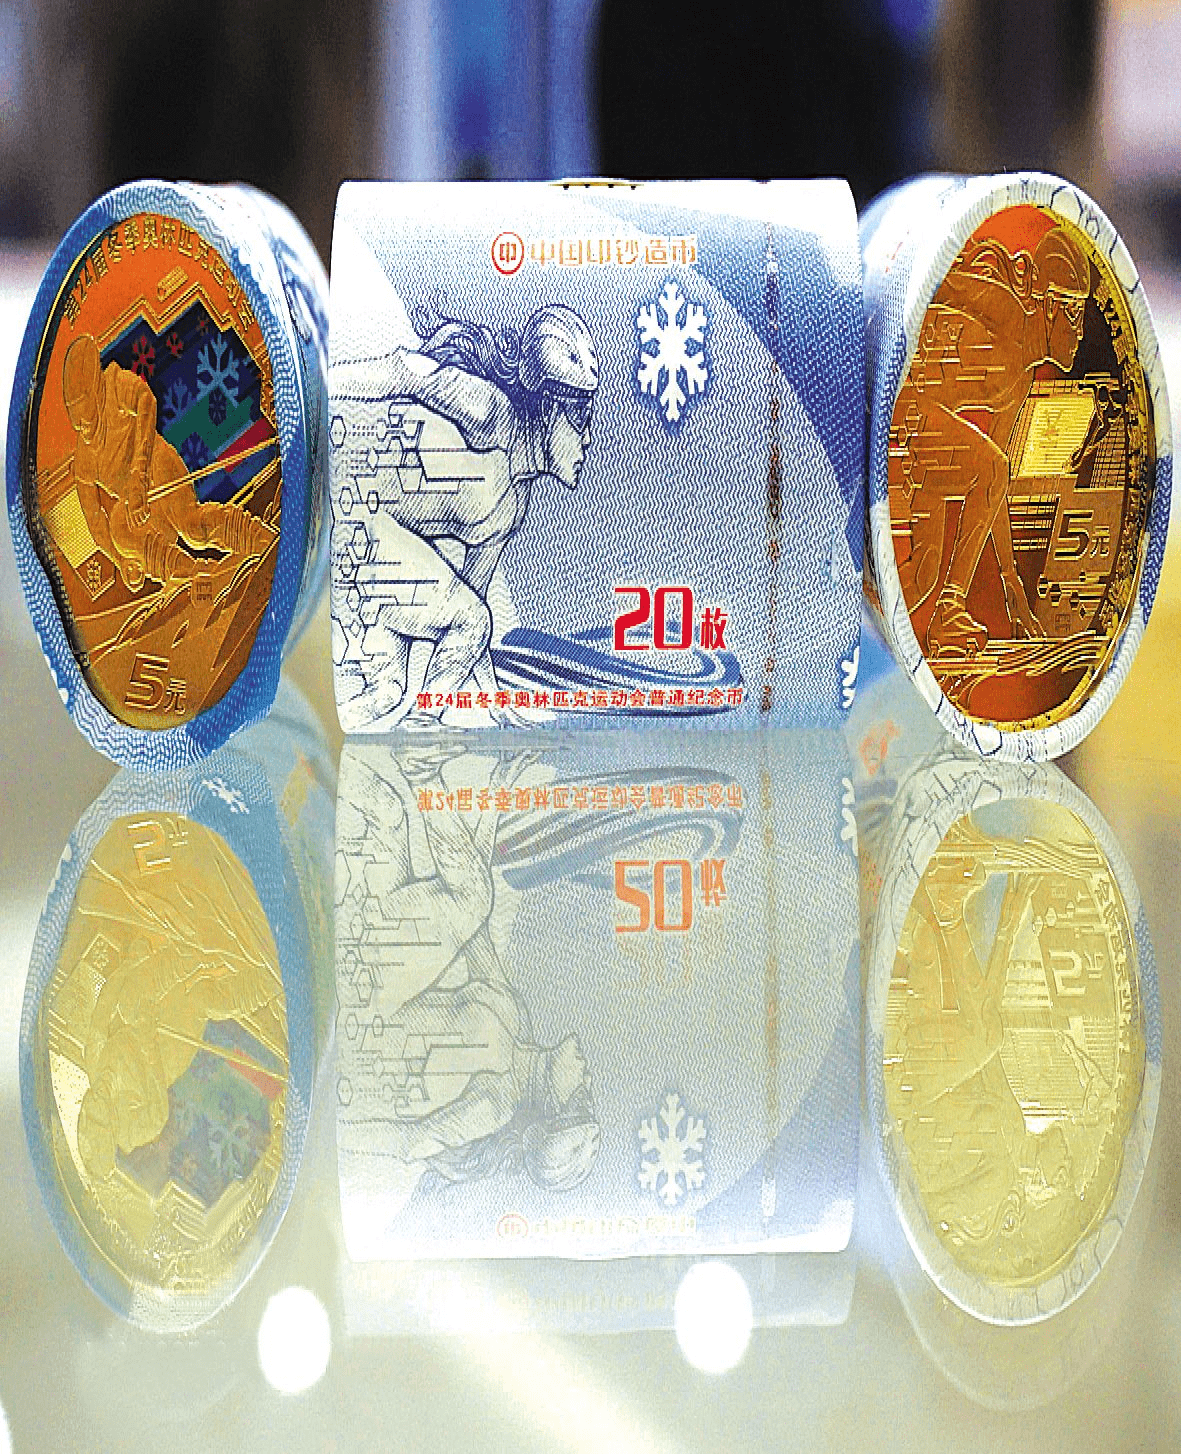 北京冬奥会纪念币图案图片